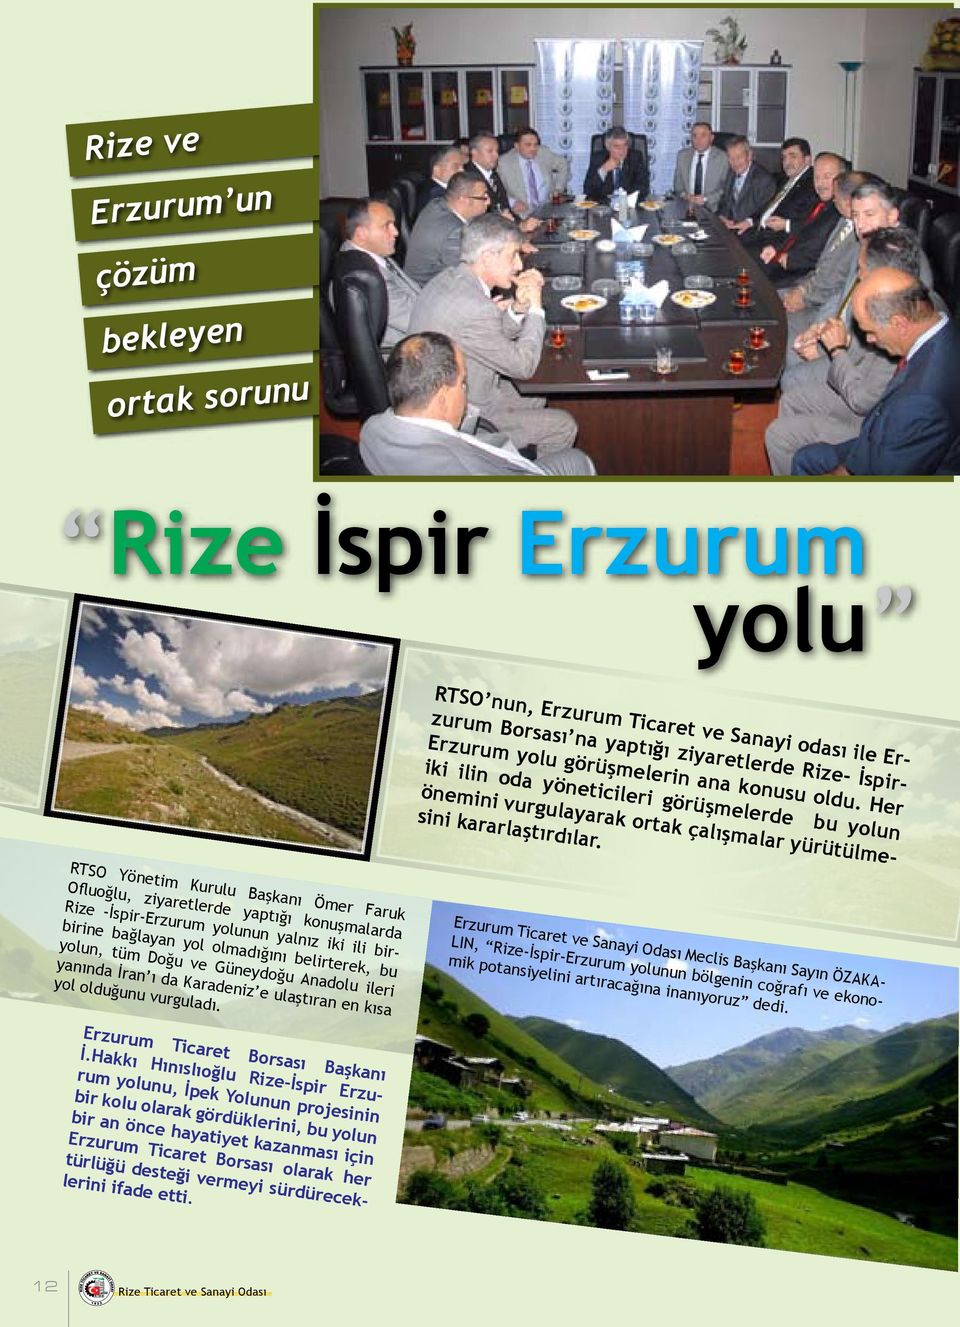 RTSO Yönetim Kurulu Başkanı Ömer Faruk Ofluoğlu, ziyaretlerde yaptığı konuşmalarda Rize -İspir-Erzurum yolunun yalnız iki ili birbirine bağlayan yol olmadığını belirterek, bu yolun, tüm Doğu ve